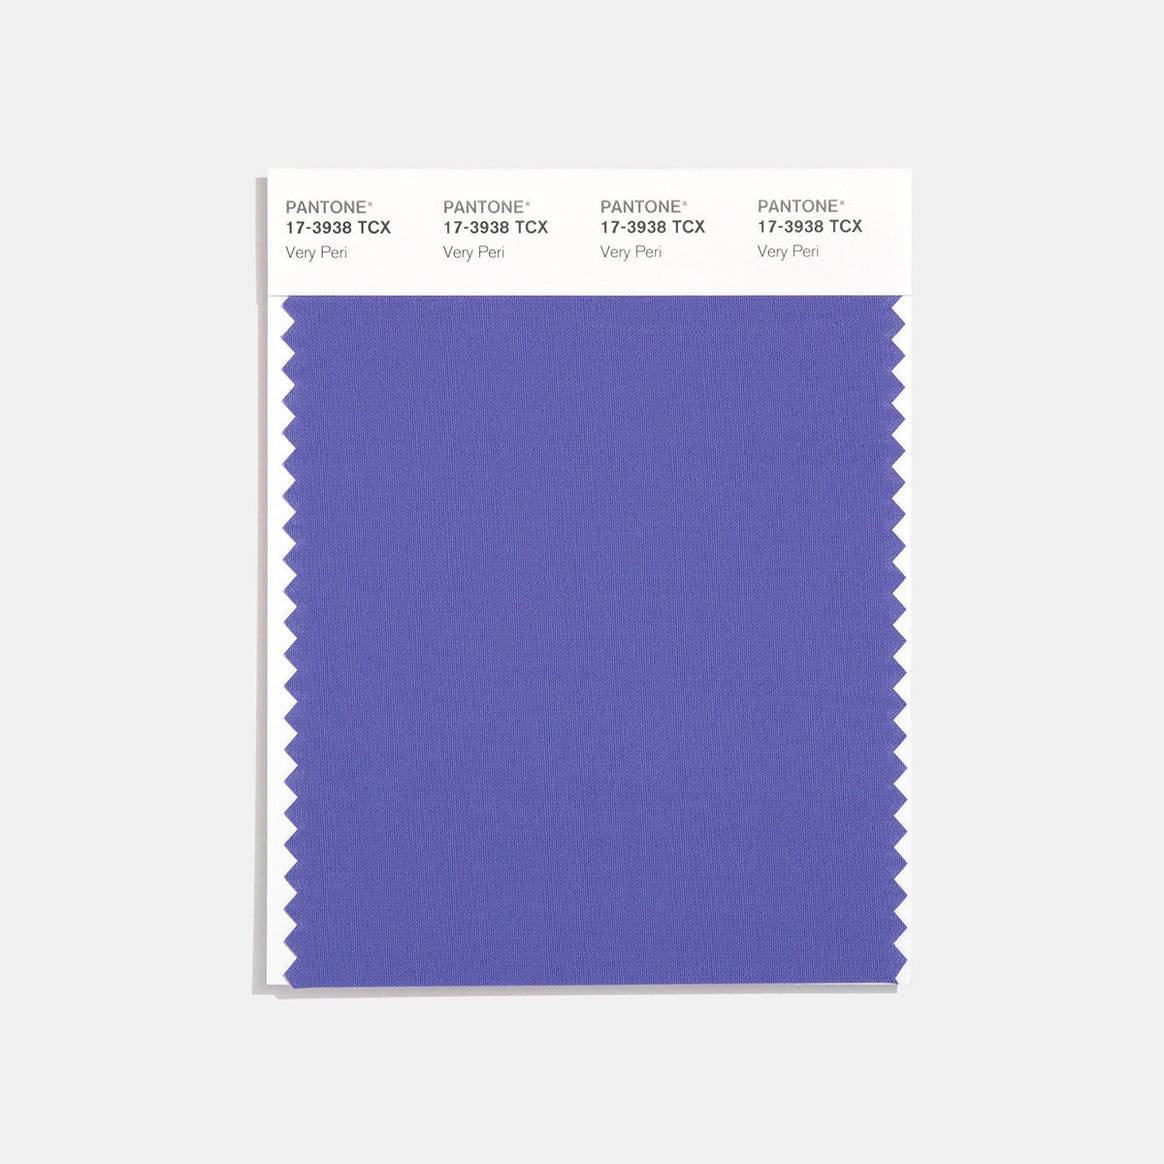 Metadescripción: Amostra textil da cor Pantone Very Peri proposta para o ano 2022, a primeira cor personalizada entre todas as paletas apresentadas desde 2000.